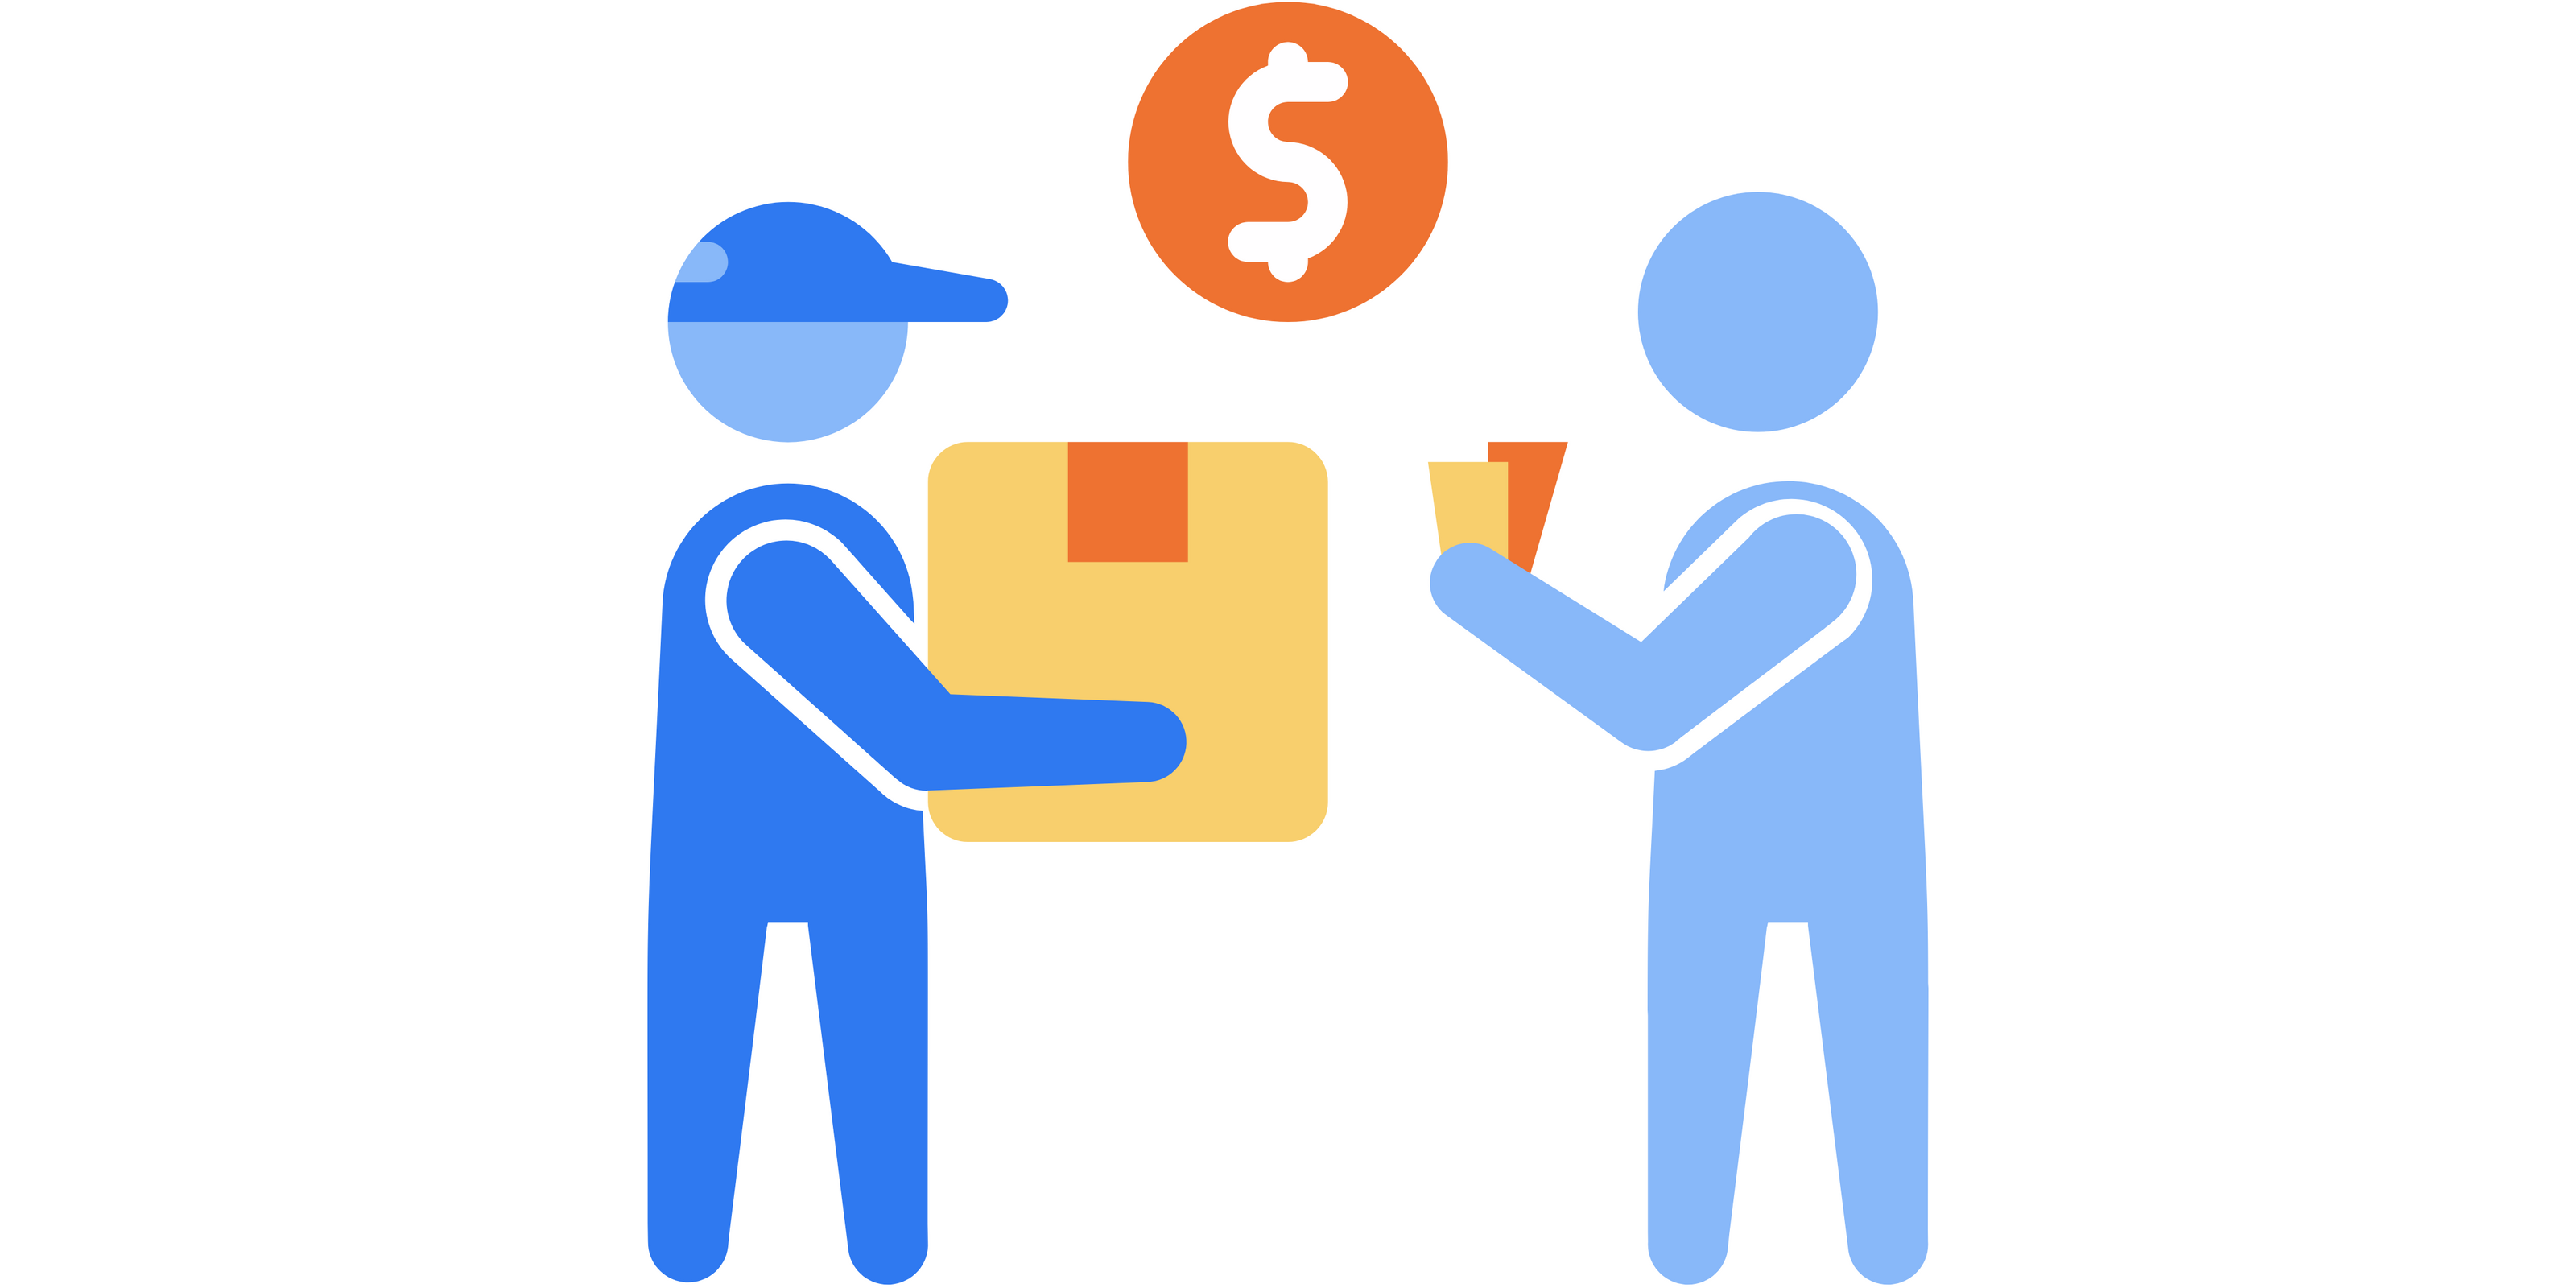 PNG sous forme d'icone montrant un livreur qui a la commande en main, avec un client tenant l'argent en main. Ce qui indique le moyen "paiement à la livraison"